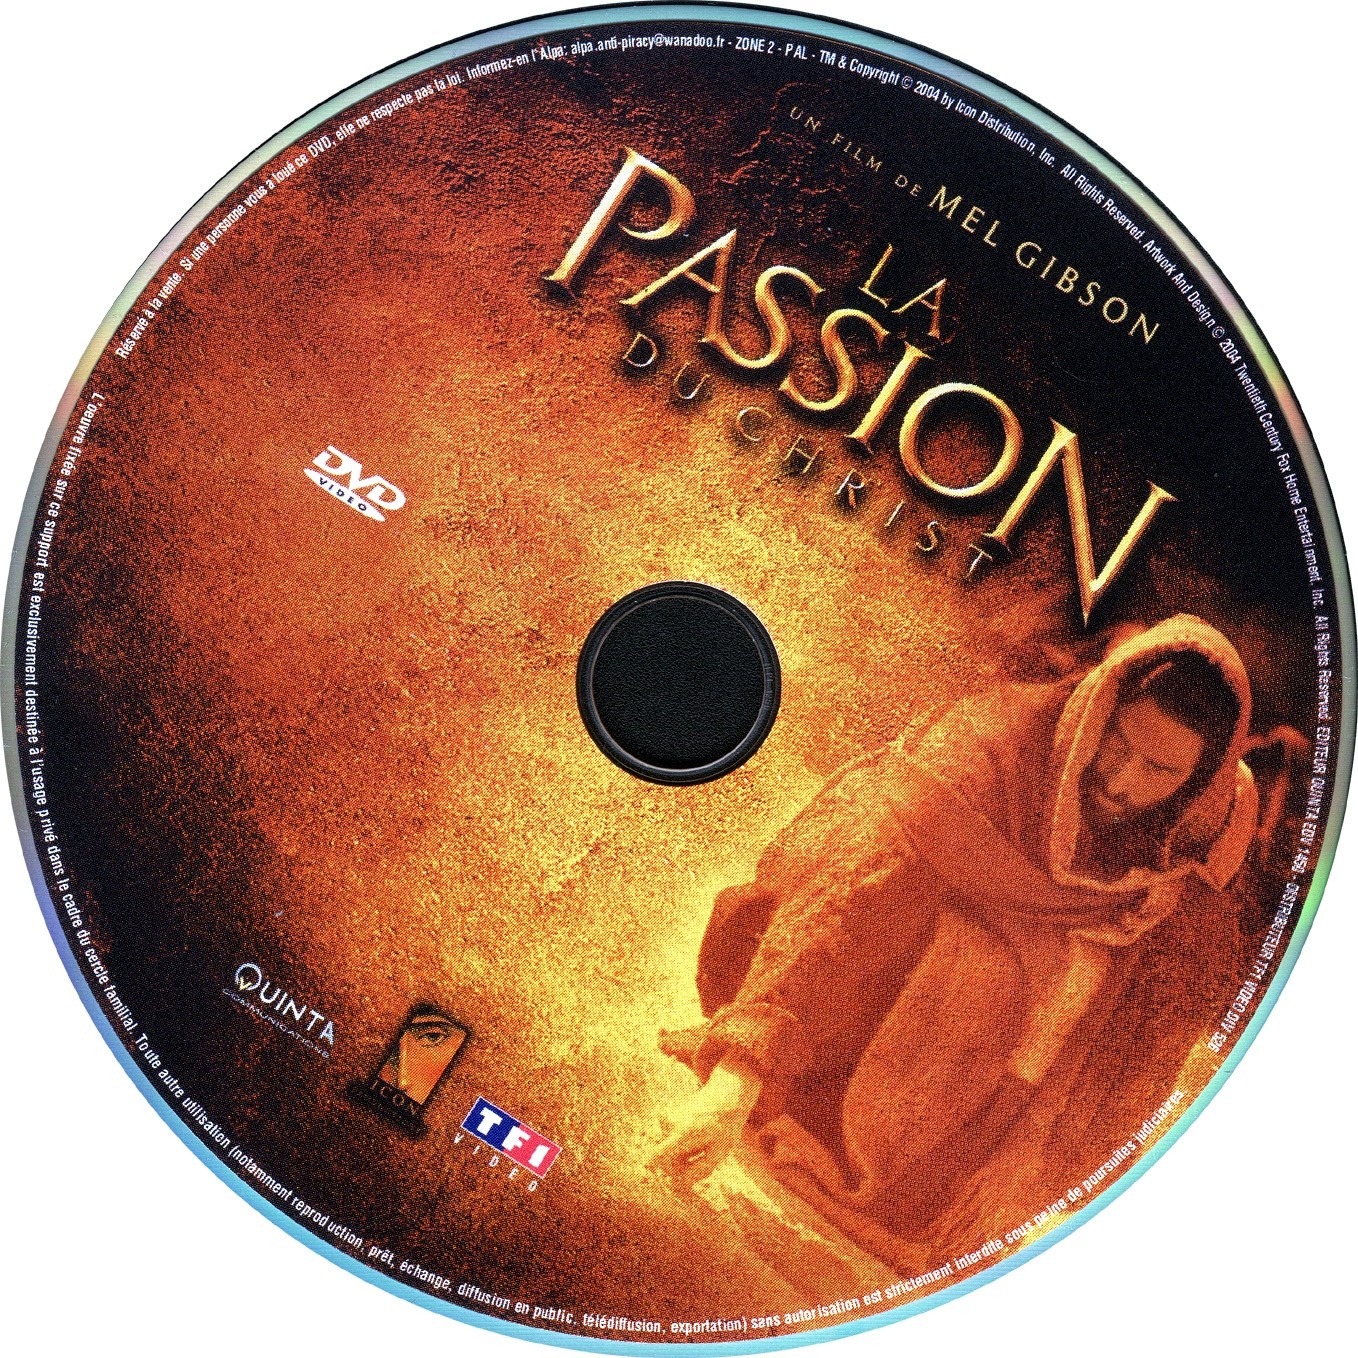 La passion du Christ